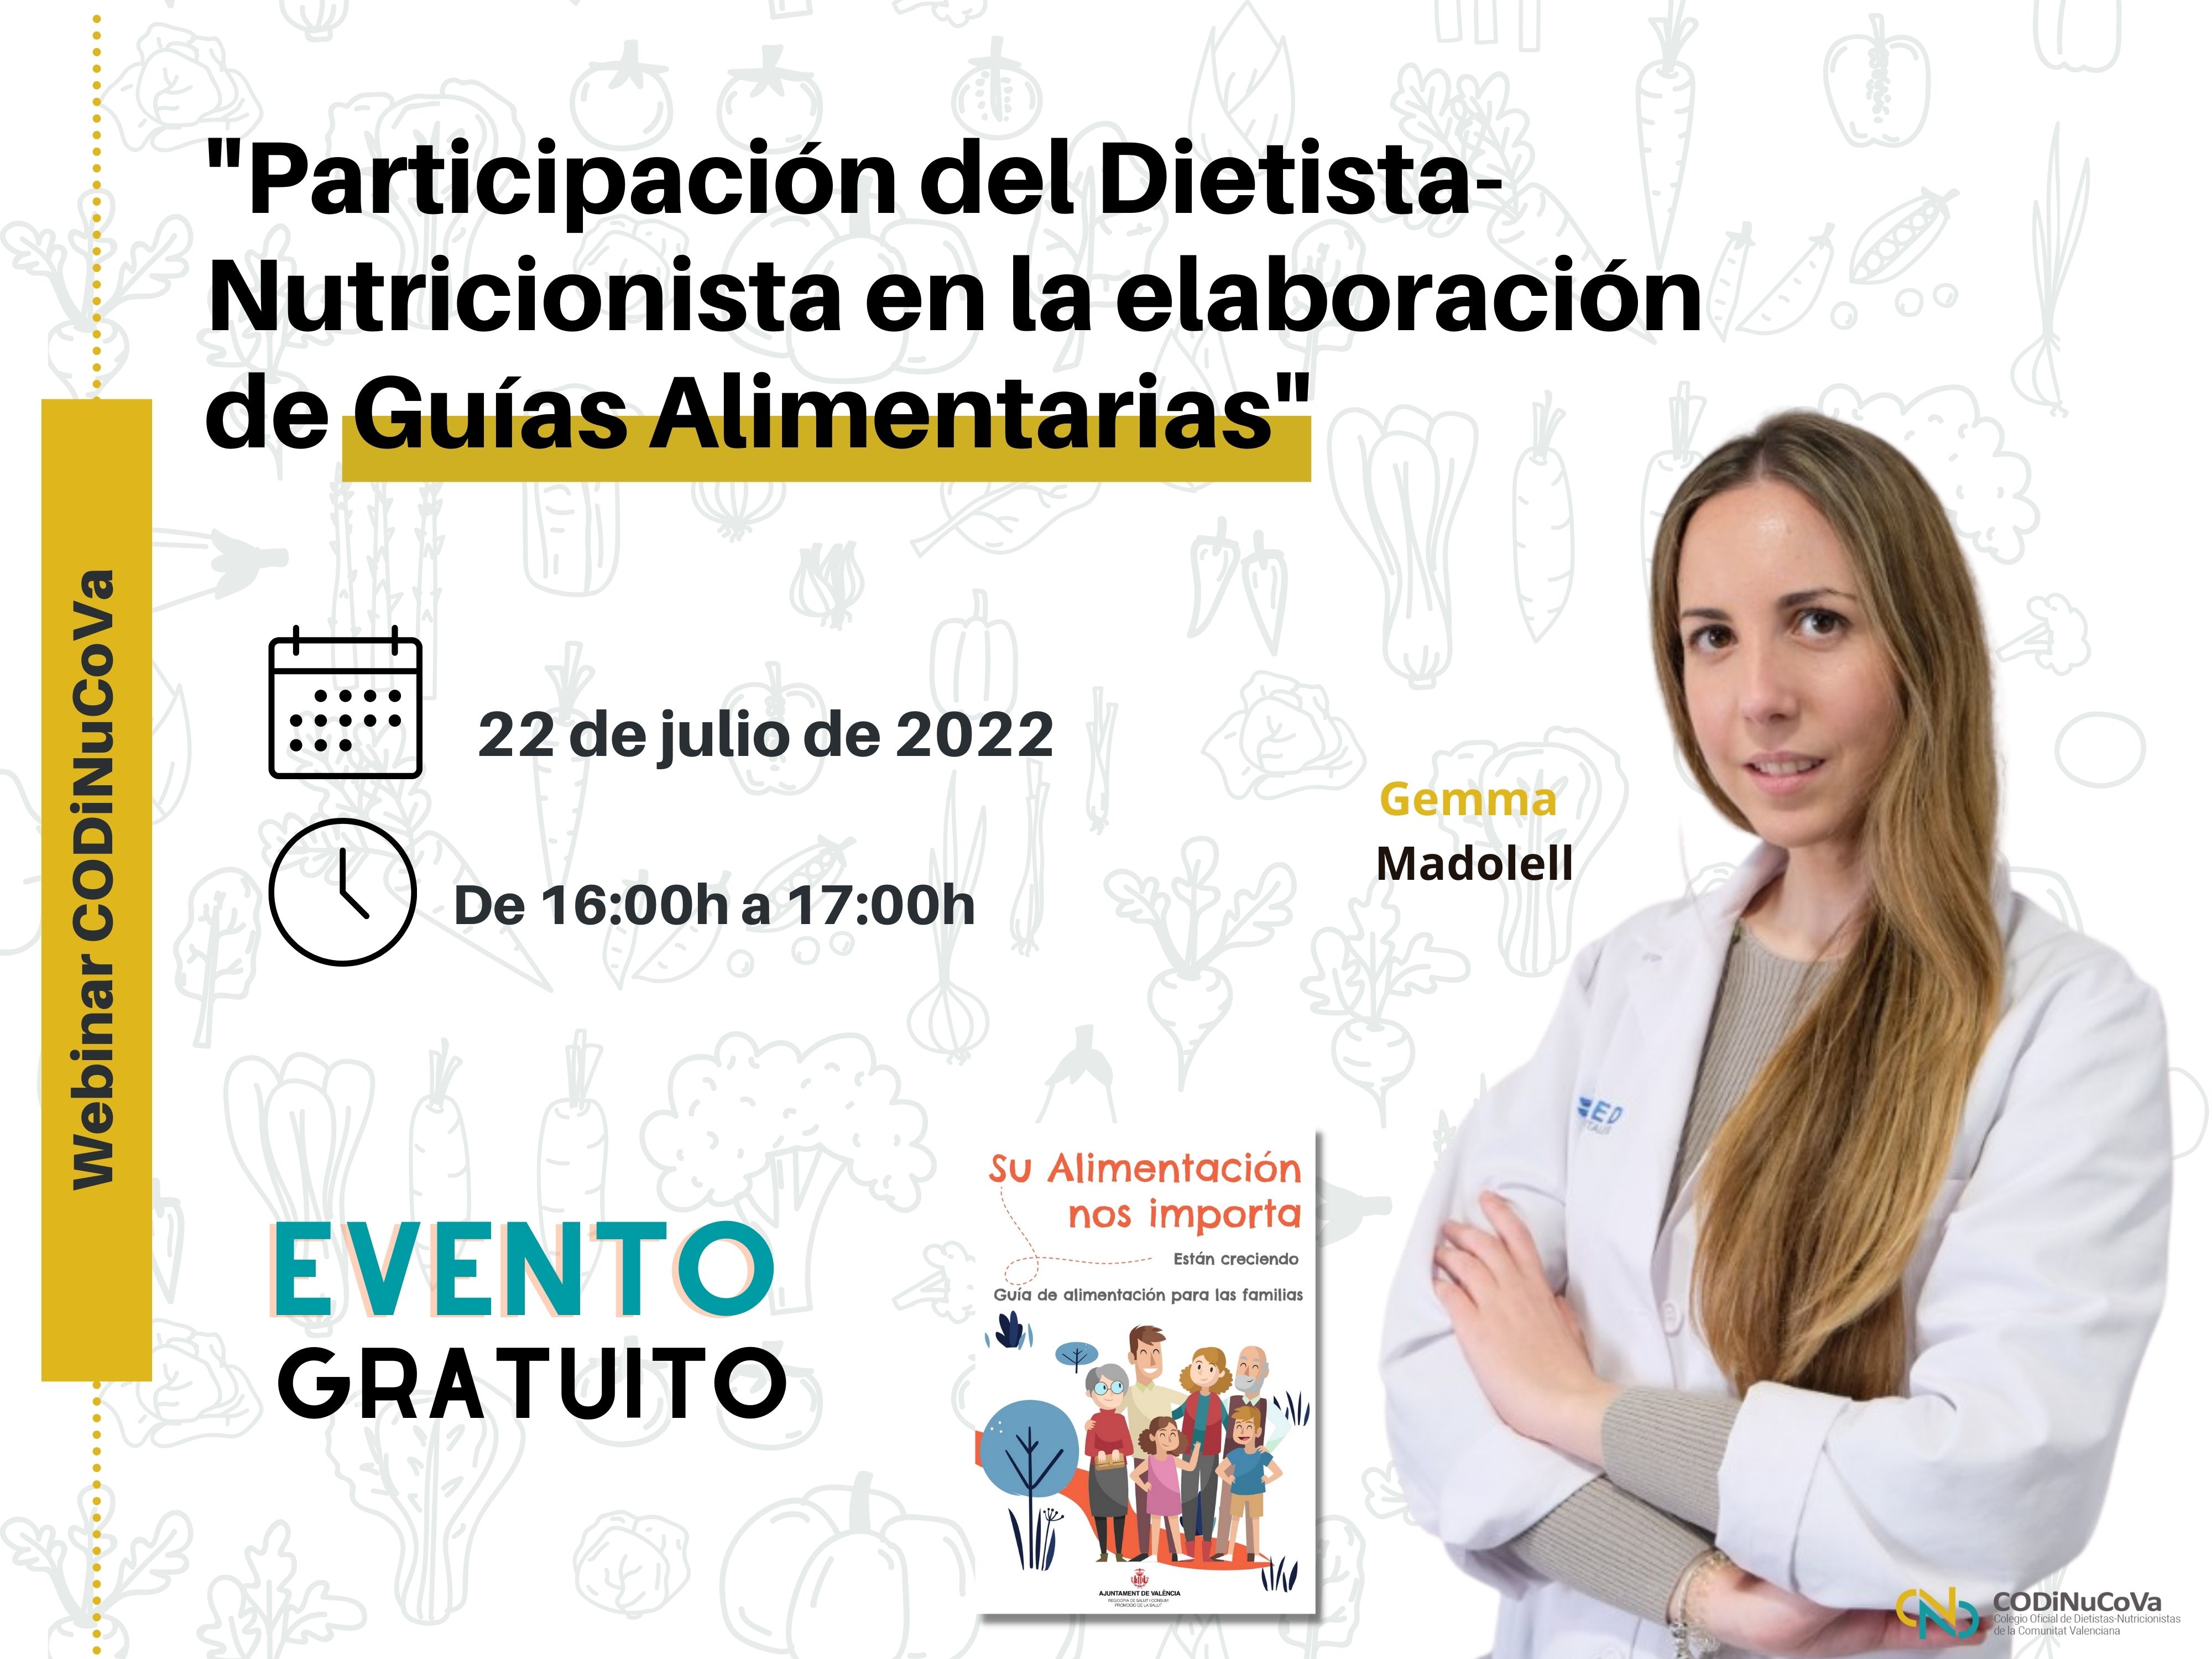 Webinar Gratuito: "Participación del D-N en la elaboración de Guías Alimentarias”